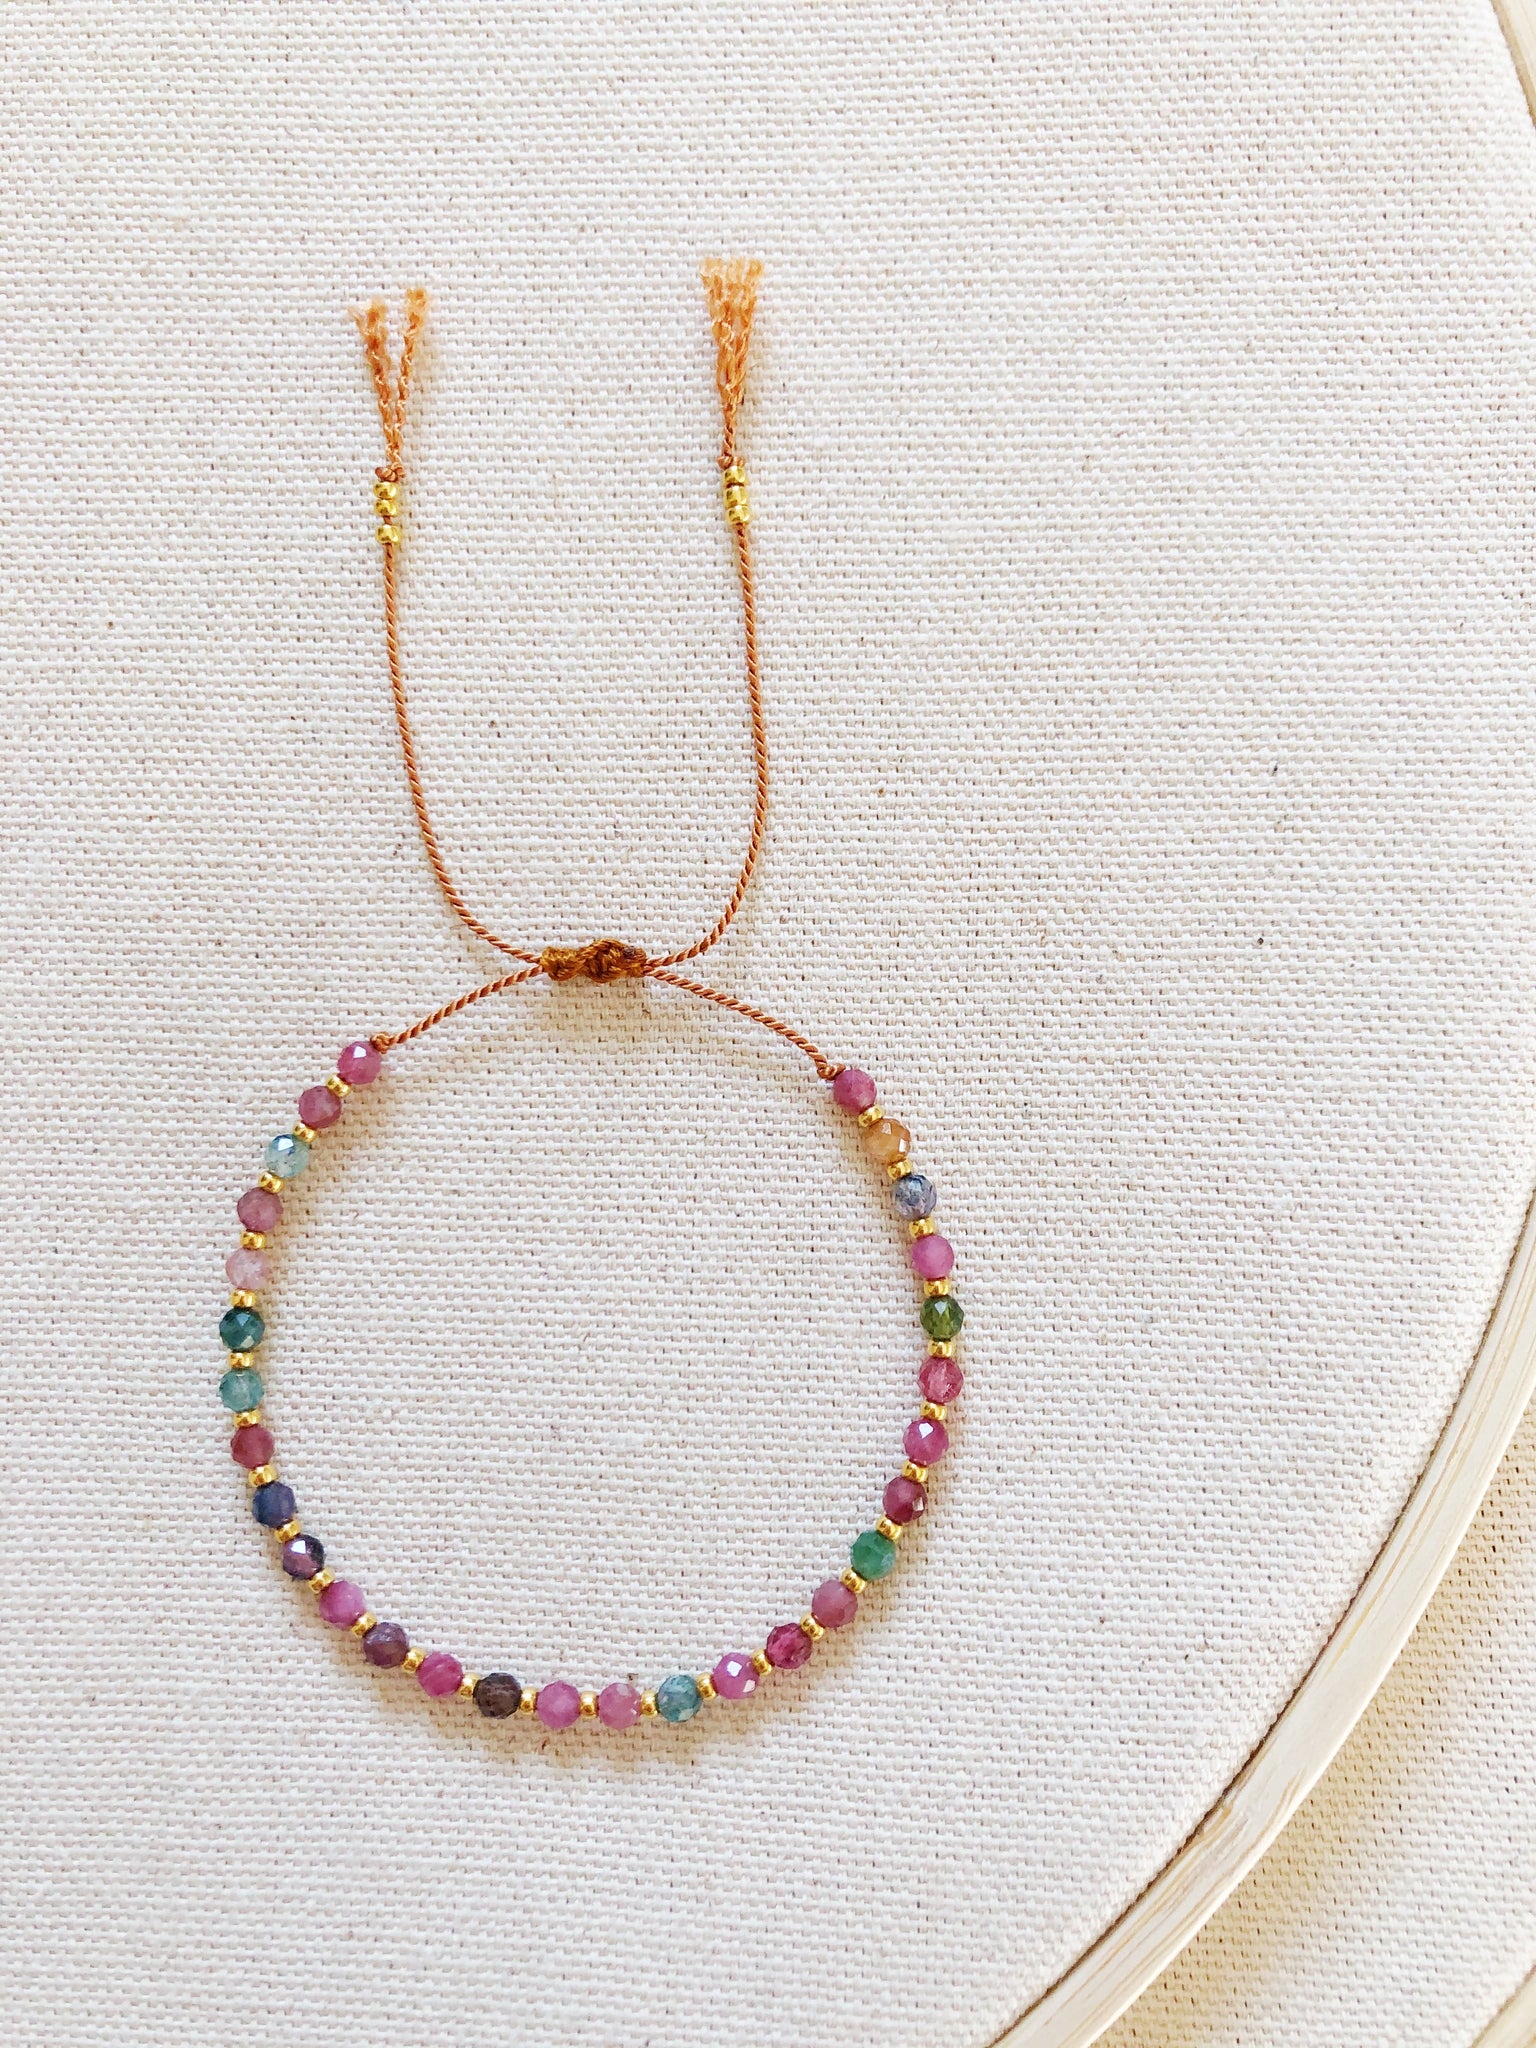 Anhelo single bracelet with tourmaline beads